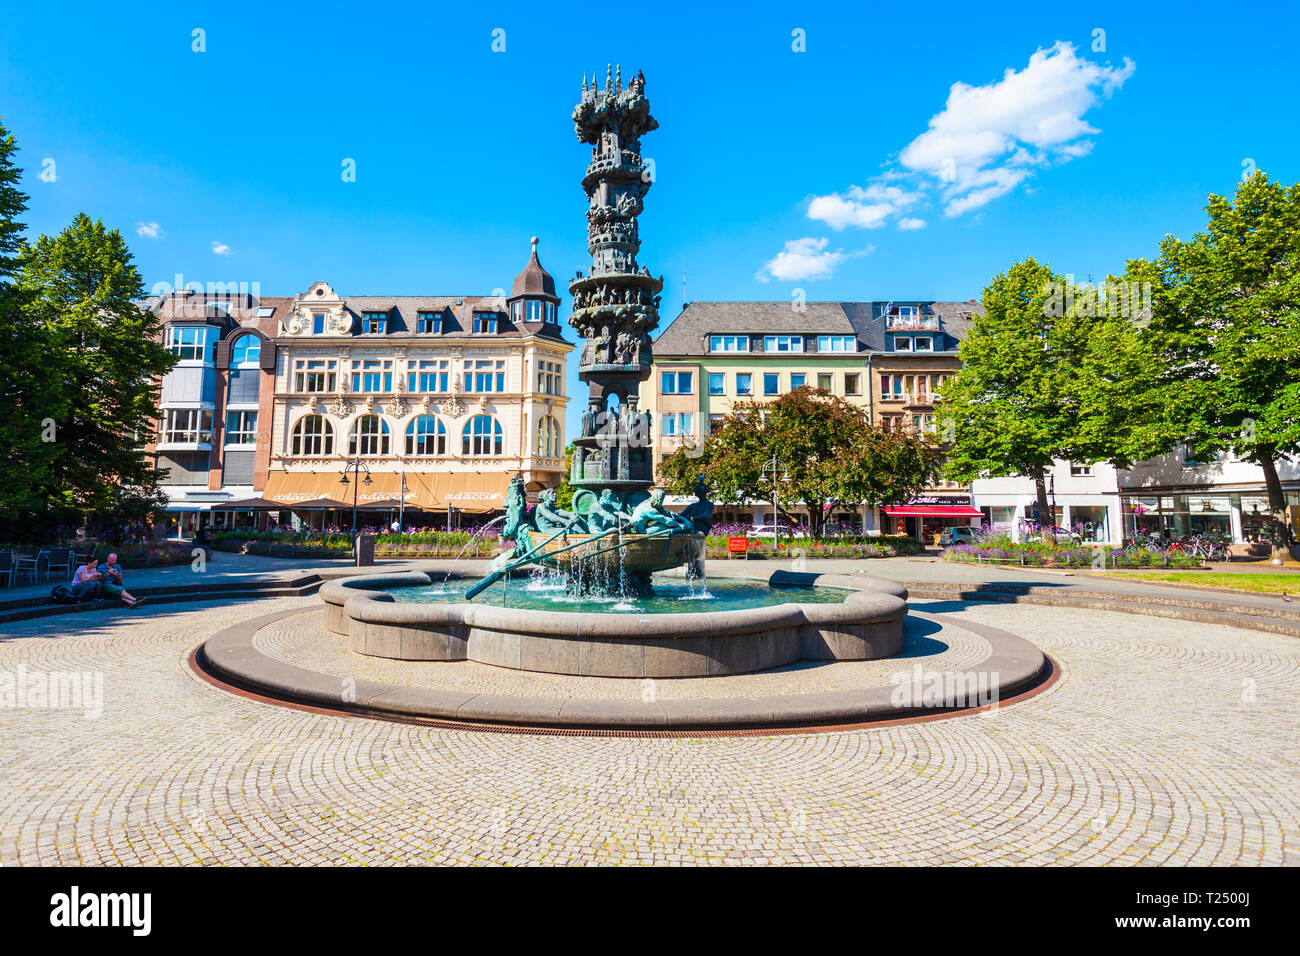 Coblence, Allemagne - 27 juin 2018 : Histoire colonne ou Historiensaule dans le centre ville de Koblenz en Allemagne Banque D'Images